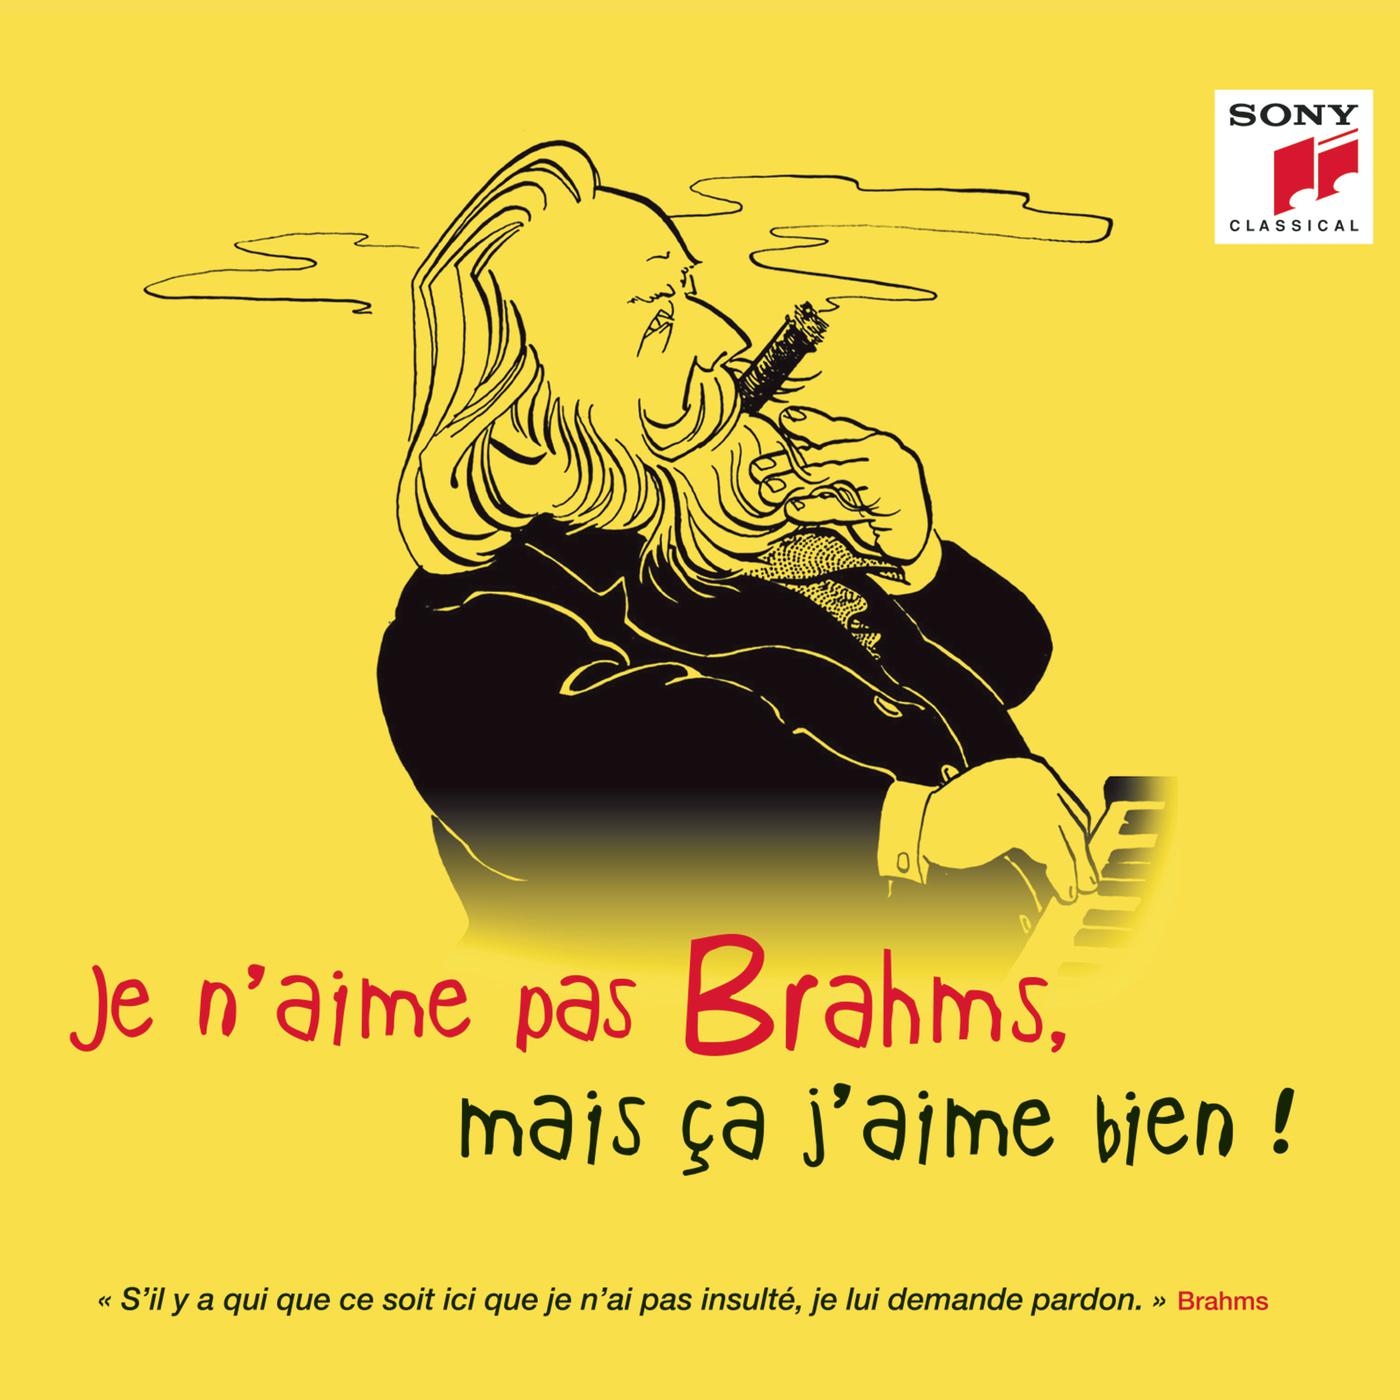 Je n' aime pas Brahms, mais a j' aime bien !